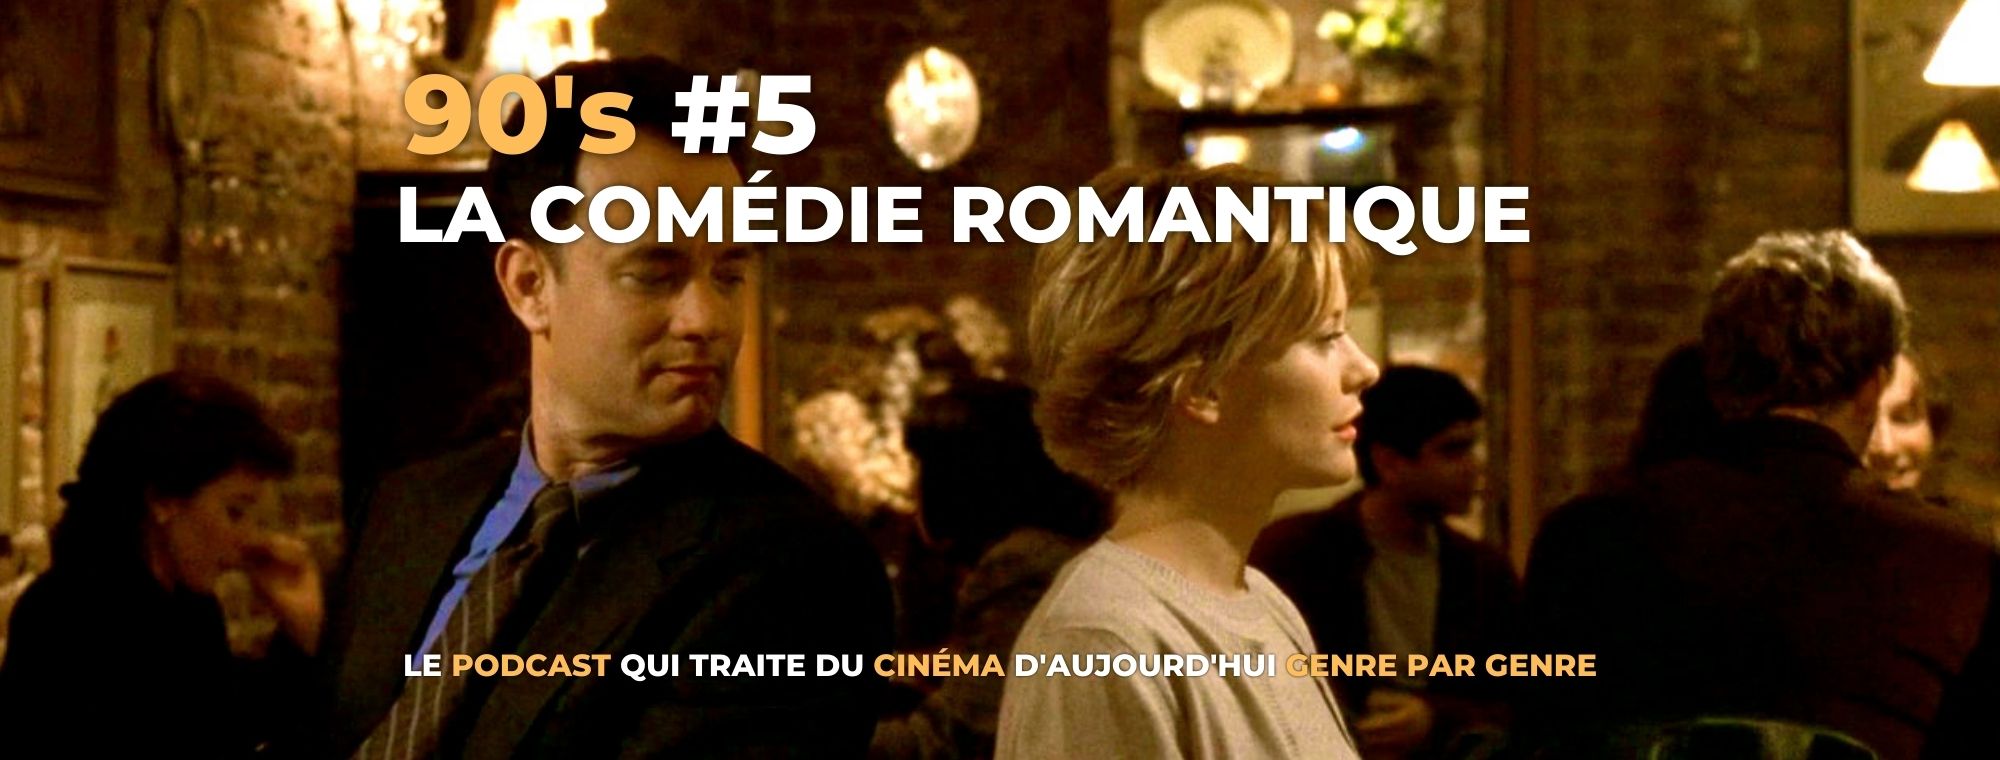 Parlons Péloches - 90’s #5 La comédie romantique